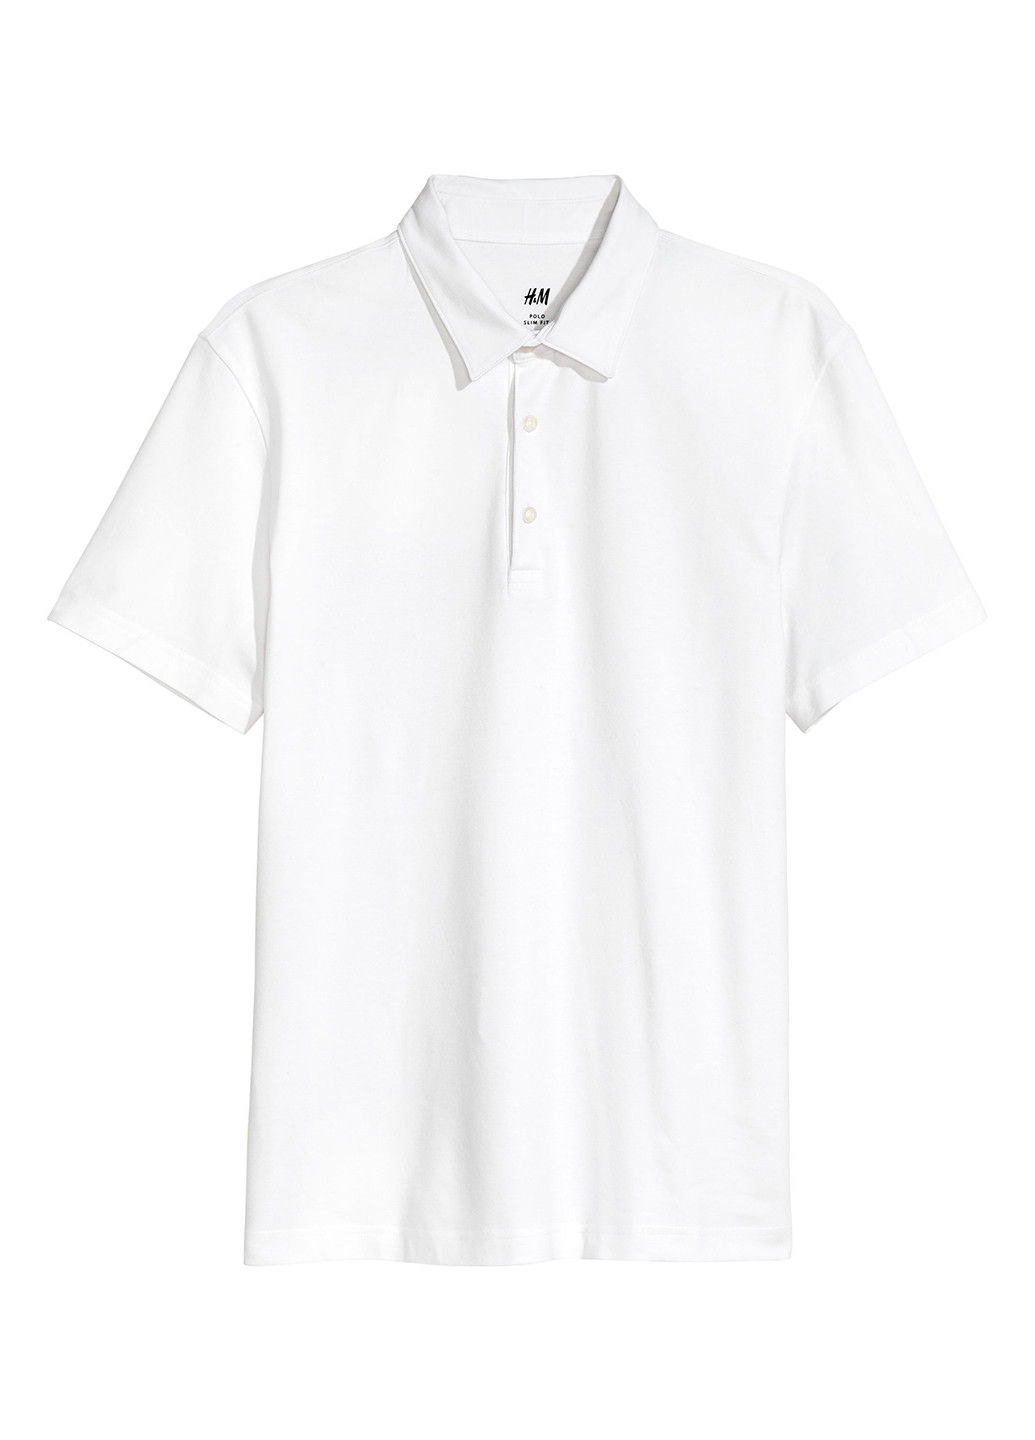 Белая футболка-поло для мужчин H&M однотонная